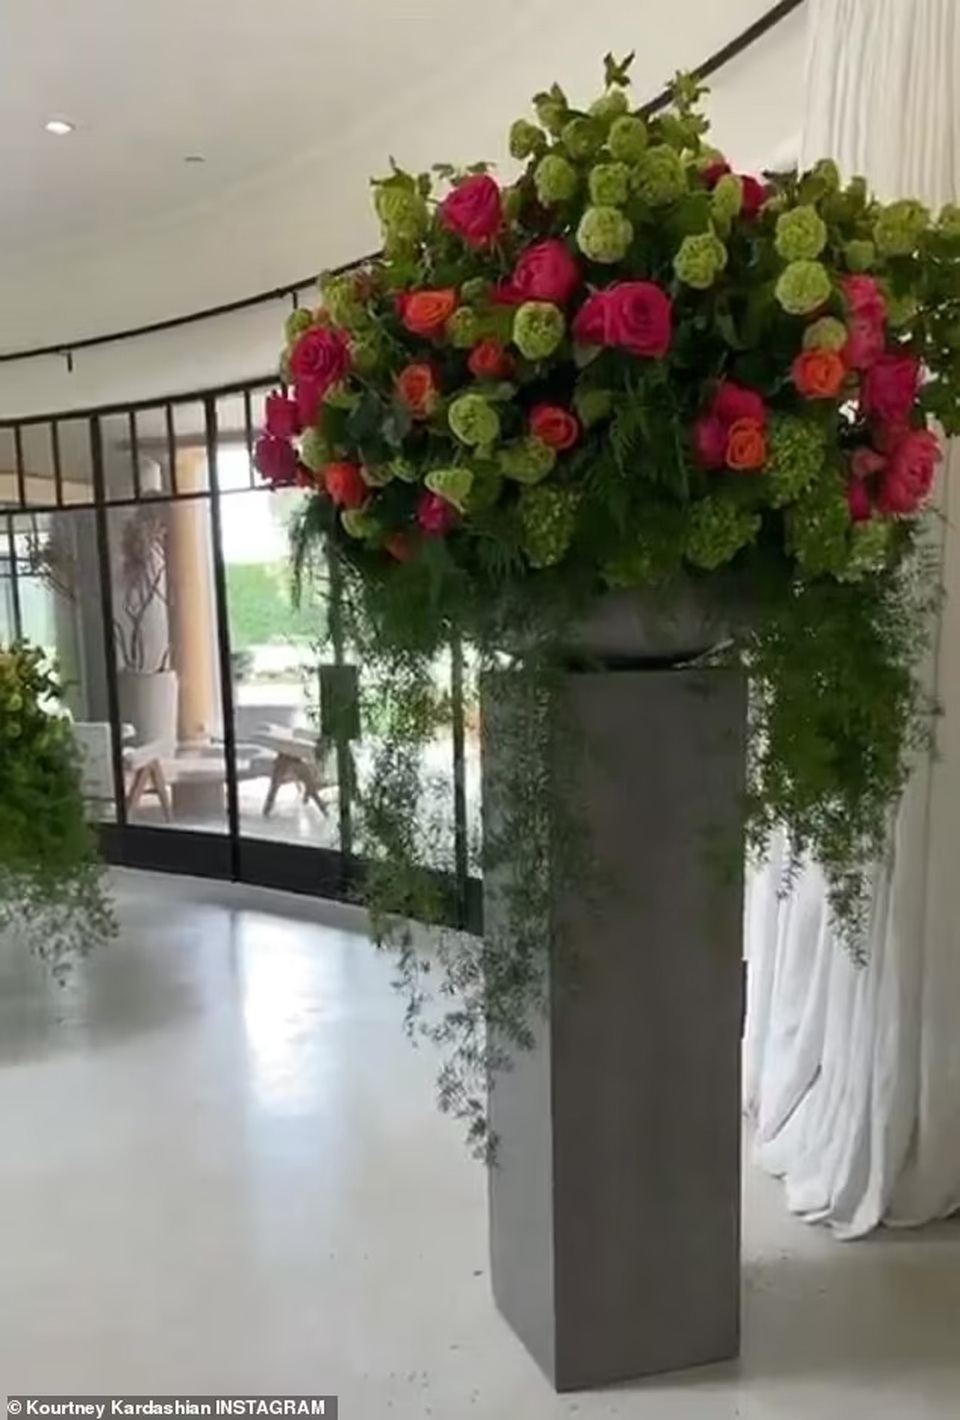 Boyfriend gave a flower house to Kourtney Kardashian - 2